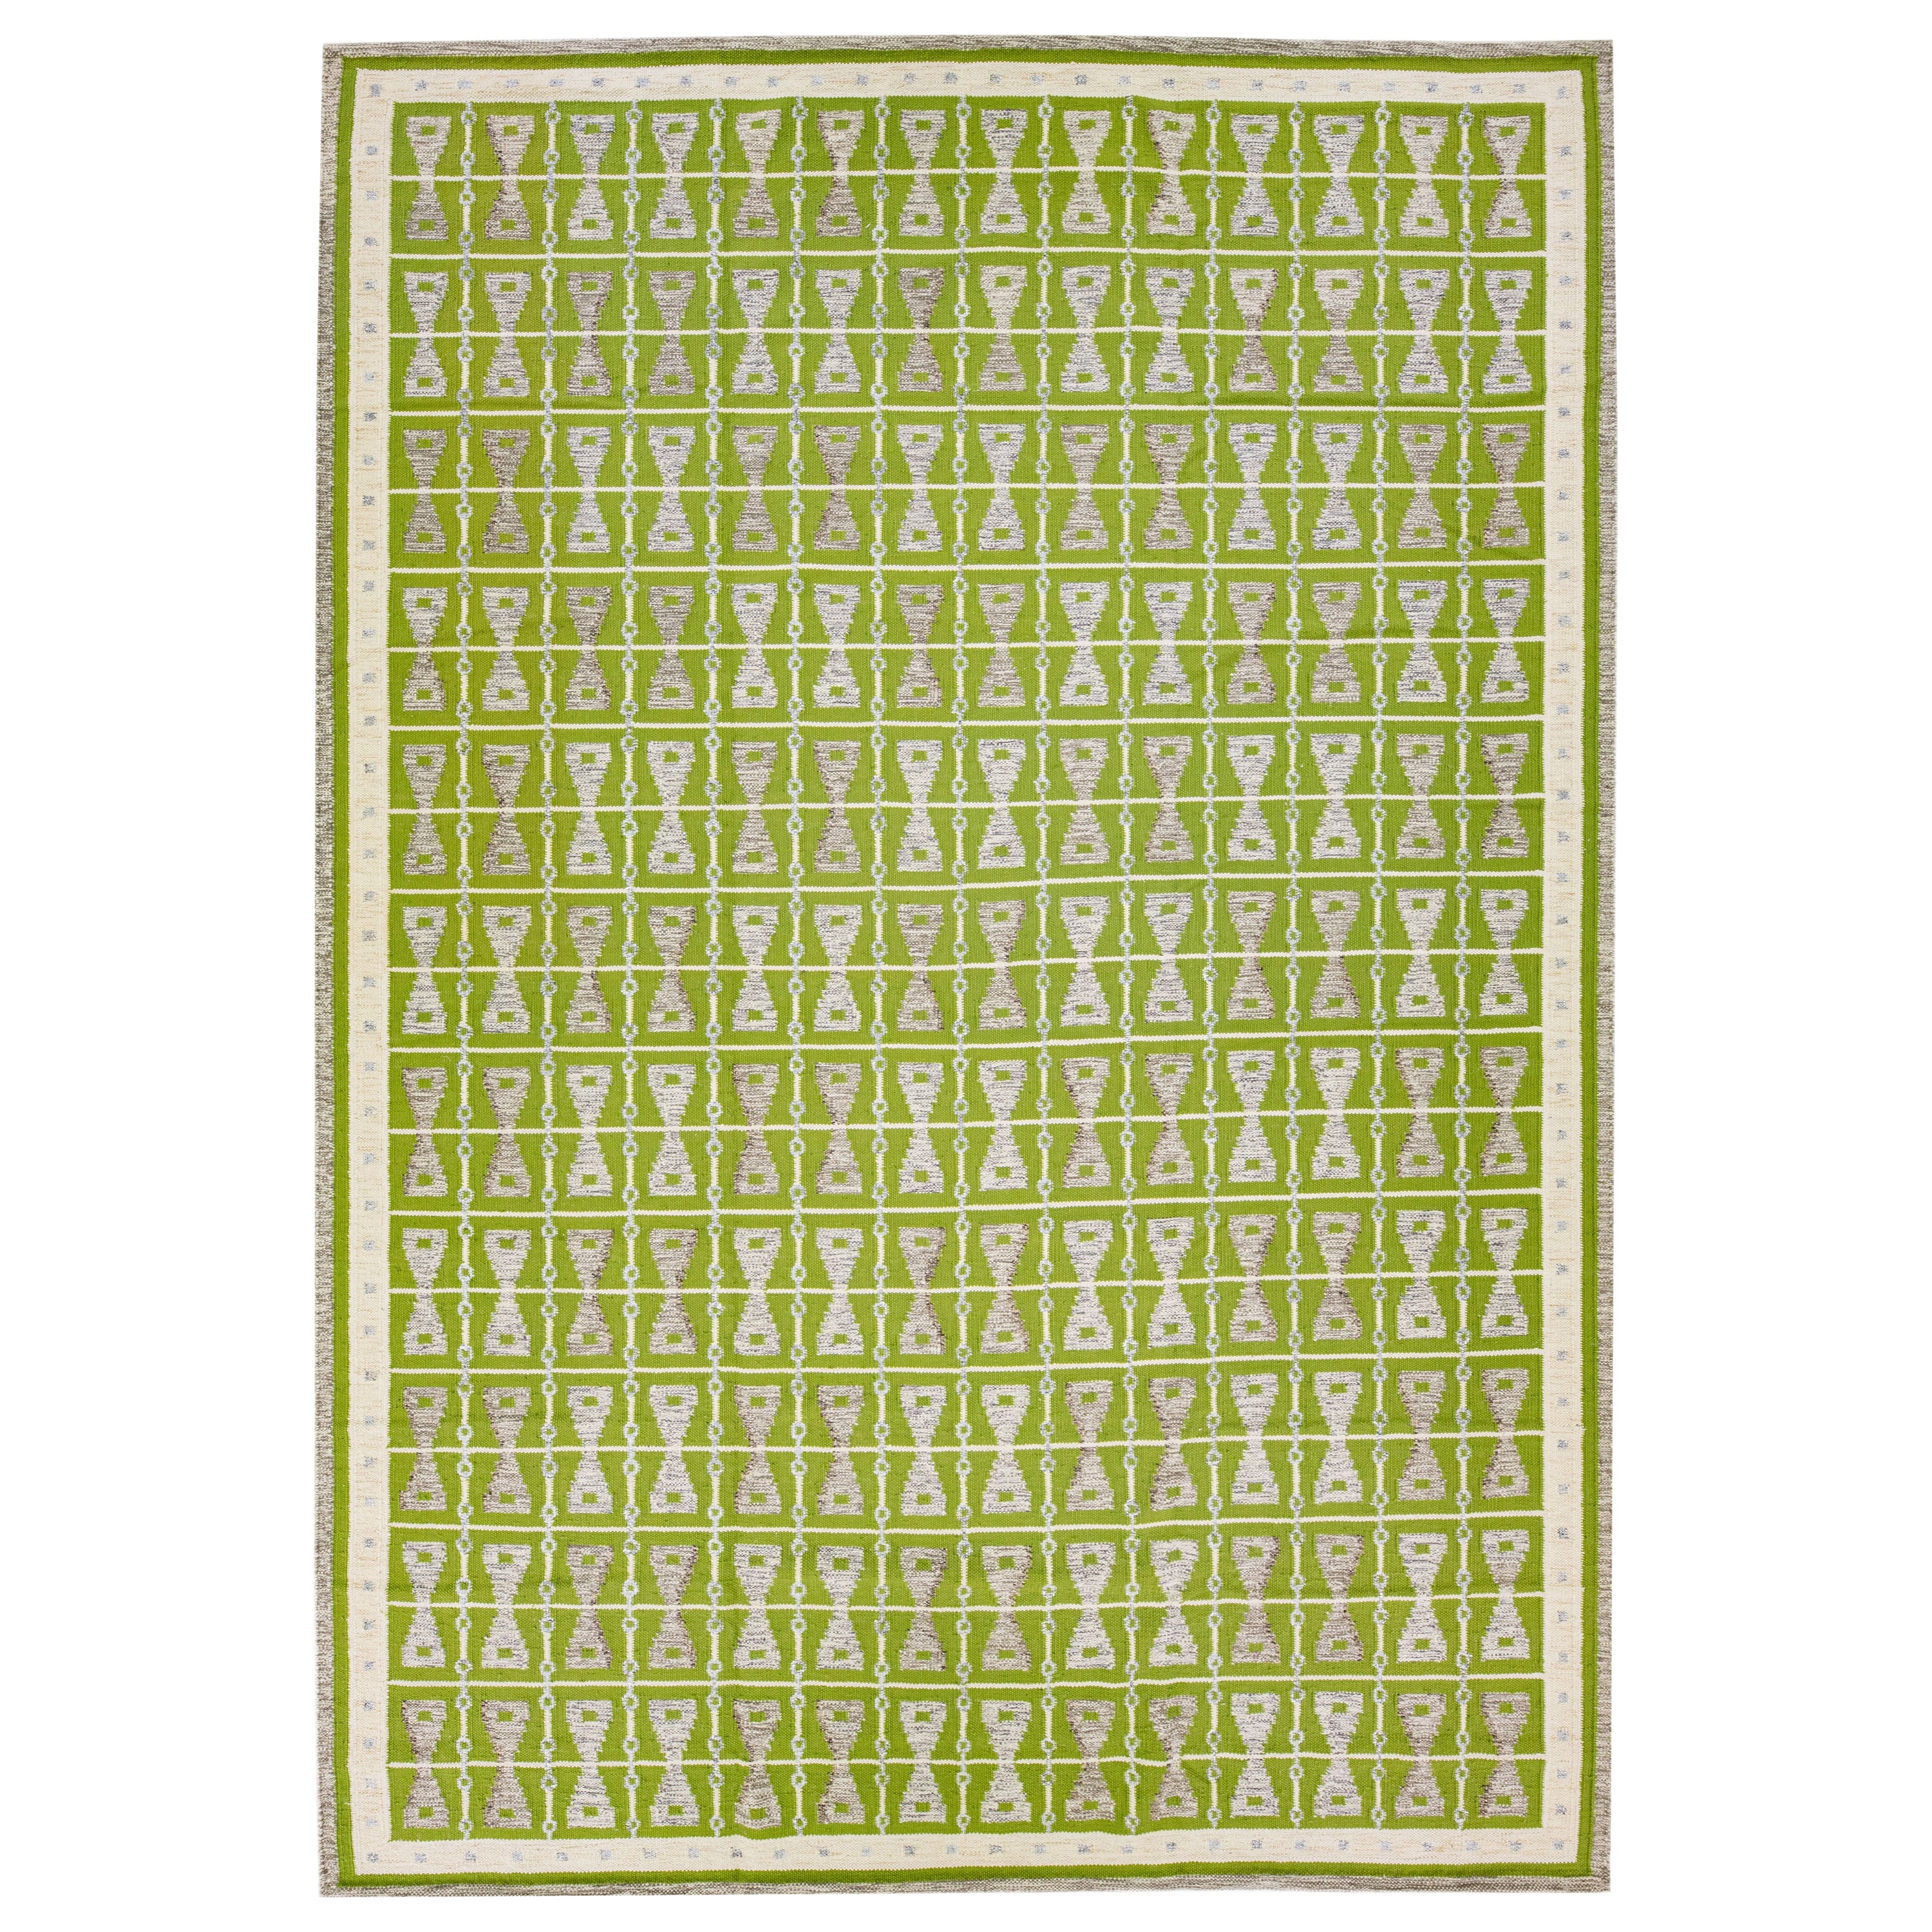 Tapis en laine vert de style suédois moderne et surdimensionné fait à la main avec un design géométrique